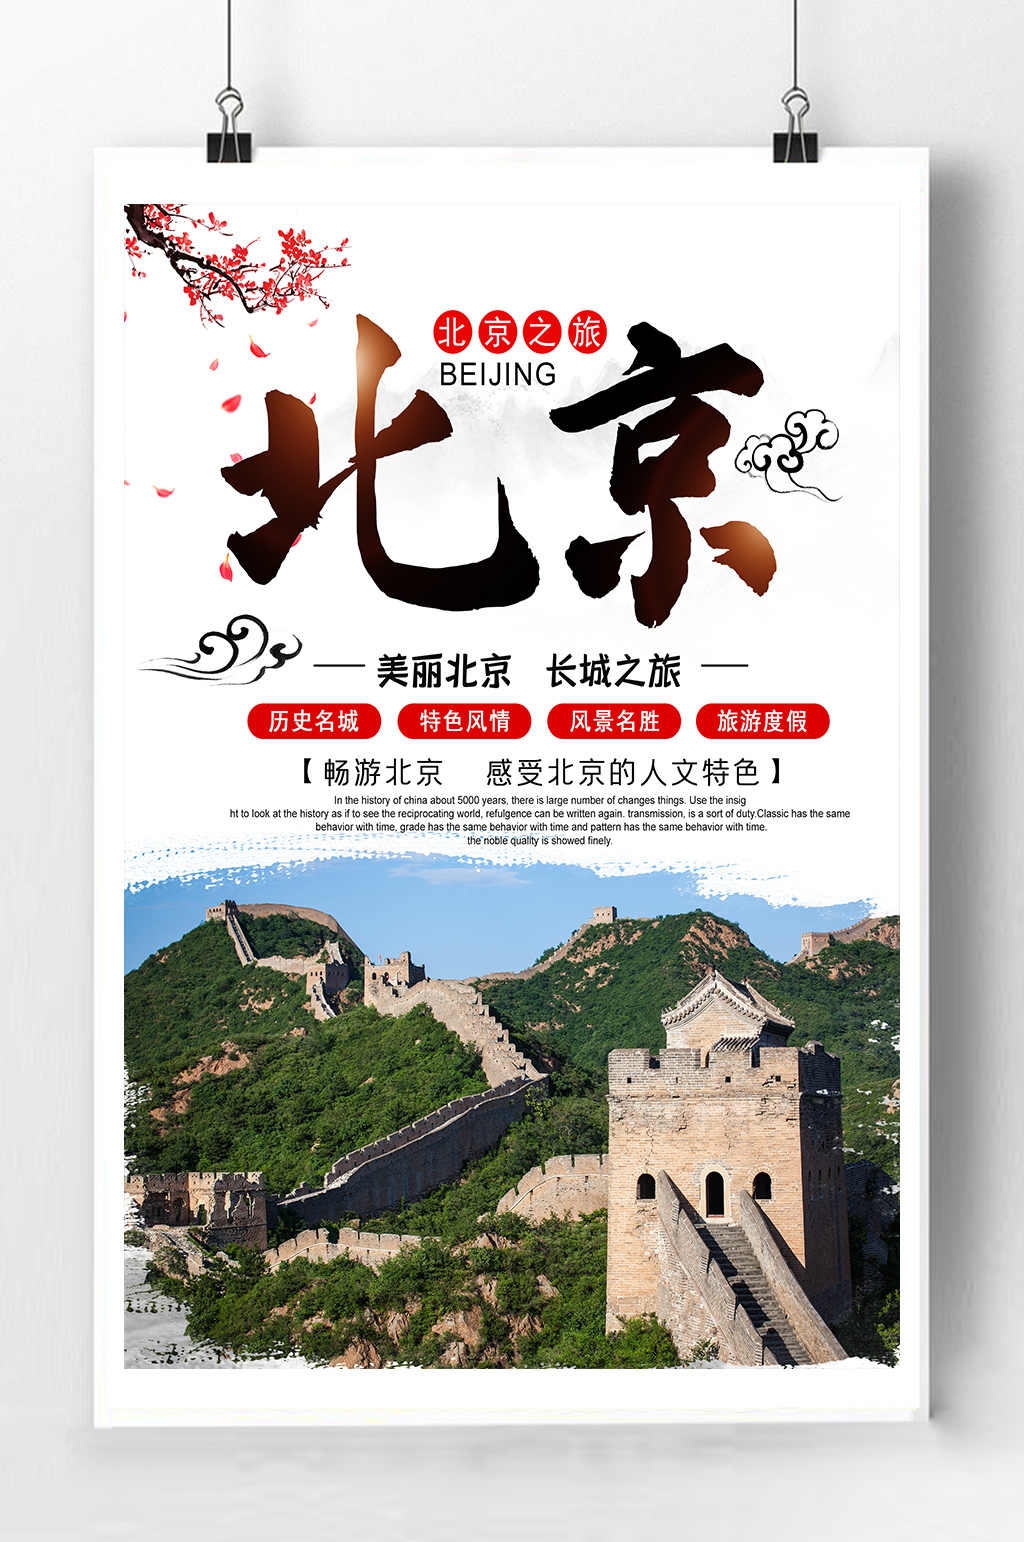 北京旅游宣传海报素材免费下载,本作品是由紫妍上传的原创平面广告